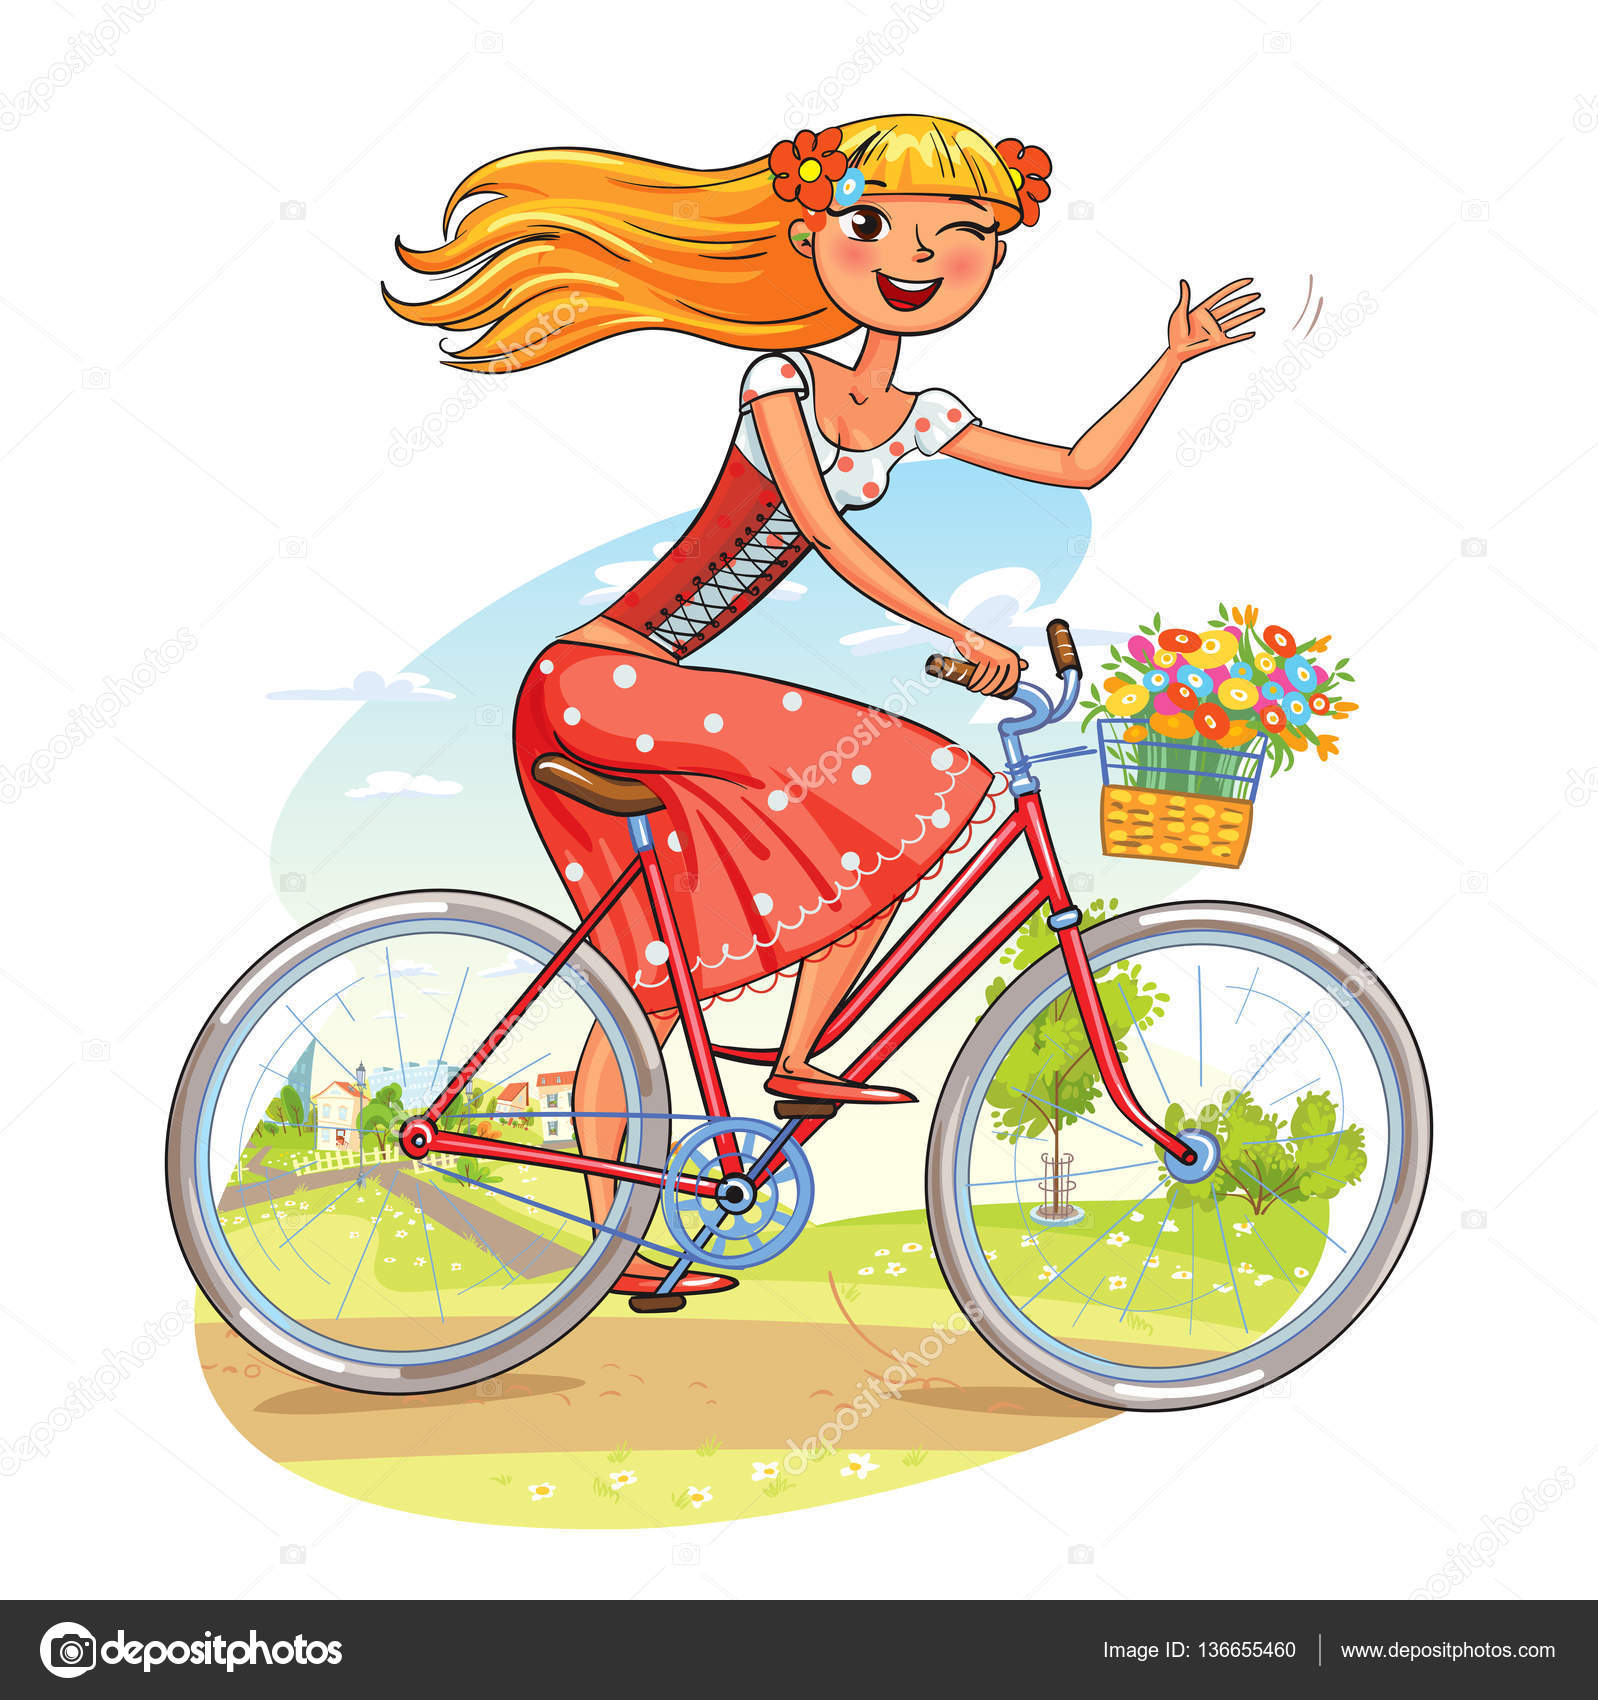 Schönes Mädchen fährt Fahrrad und winkt